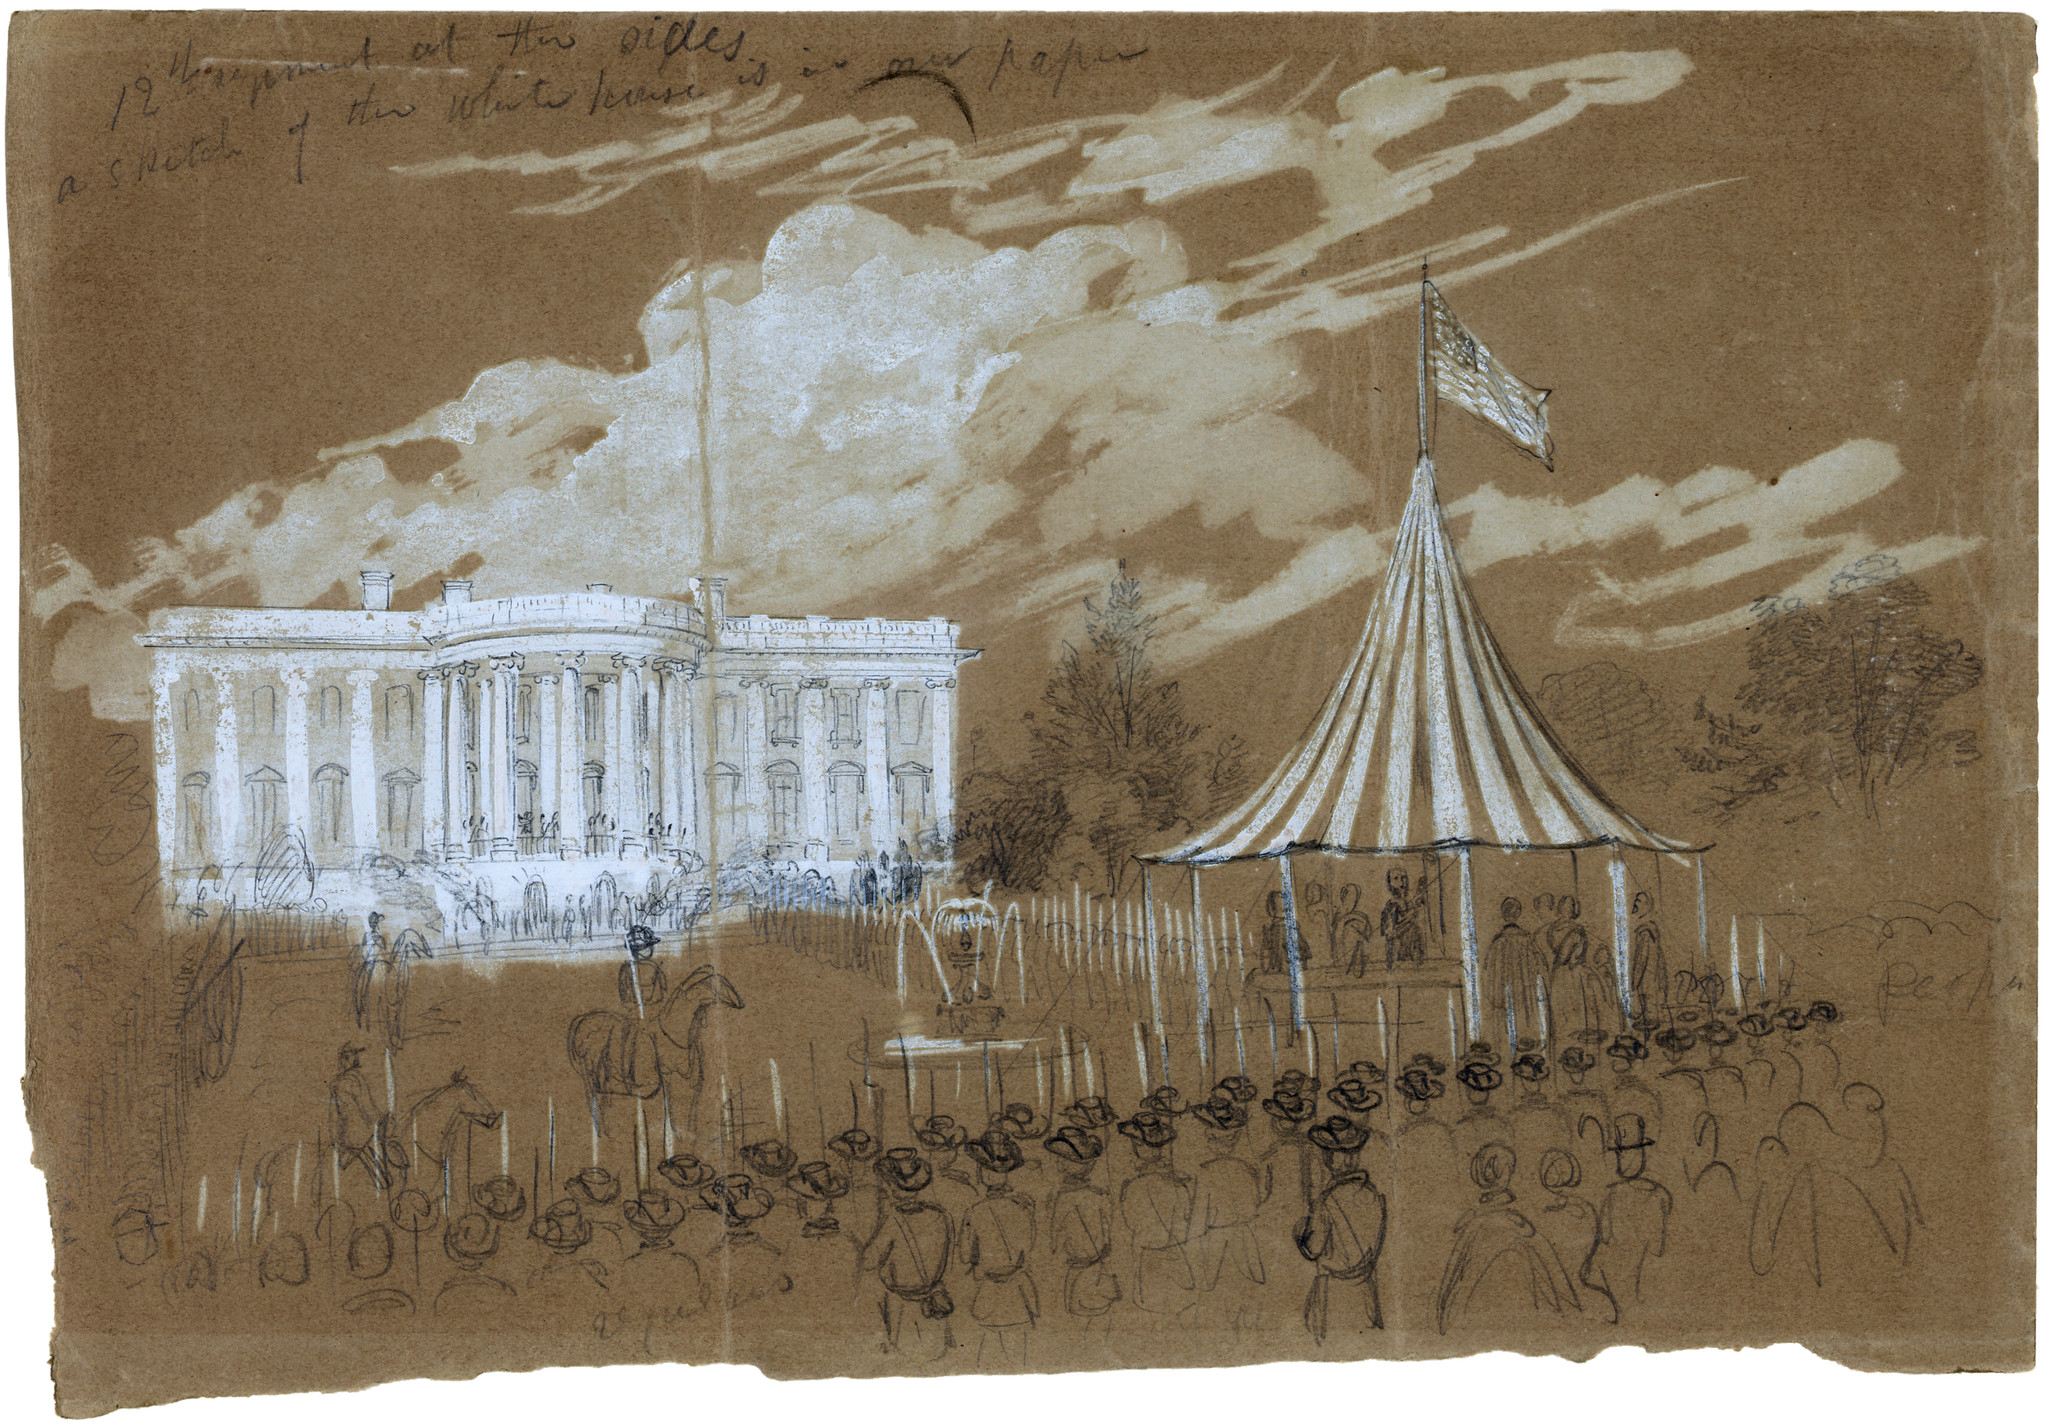 Flag raising at the White House, June 29, 1861